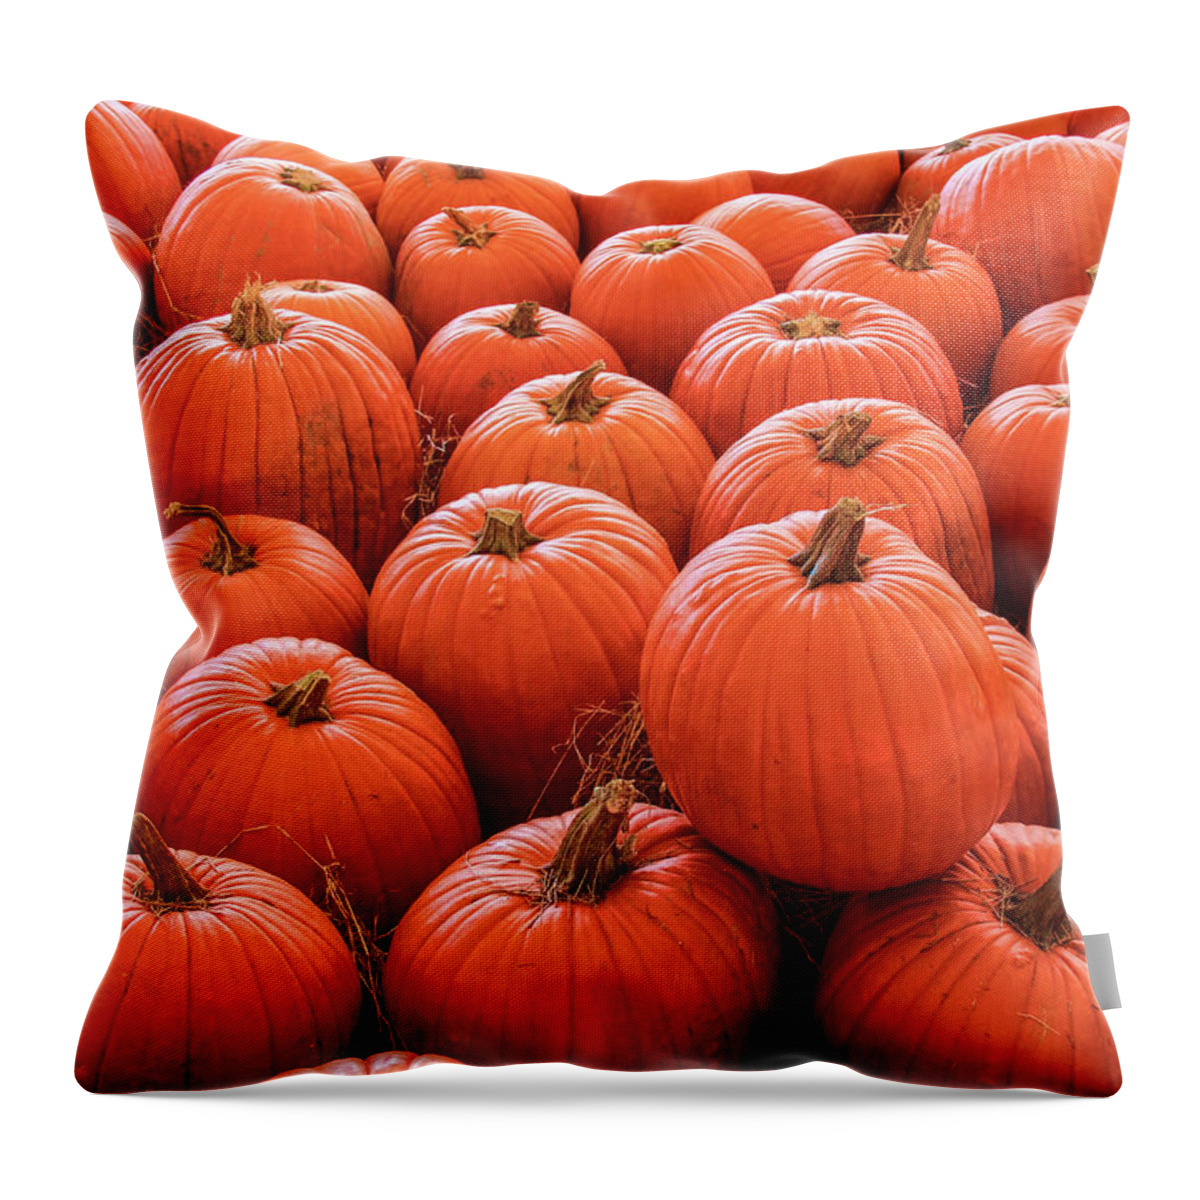 Autumn Throw Pillow featuring the photograph Pumpkin Patch by Robert Wilder Jr